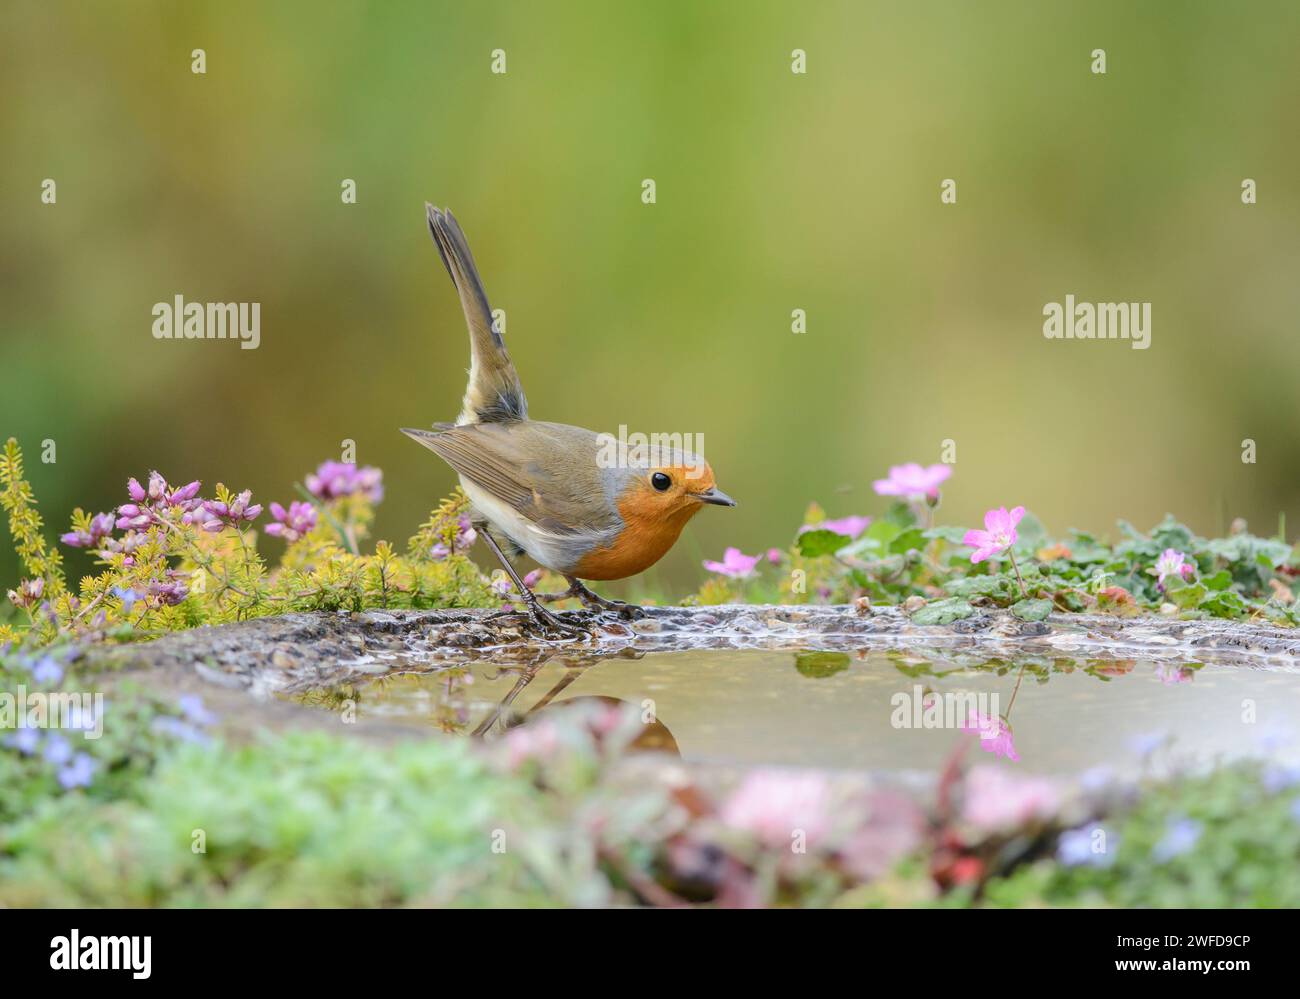 robin Erithacus rubecula européen, perché sur le bord du bain d'oiseaux de jardin, septembre. Banque D'Images